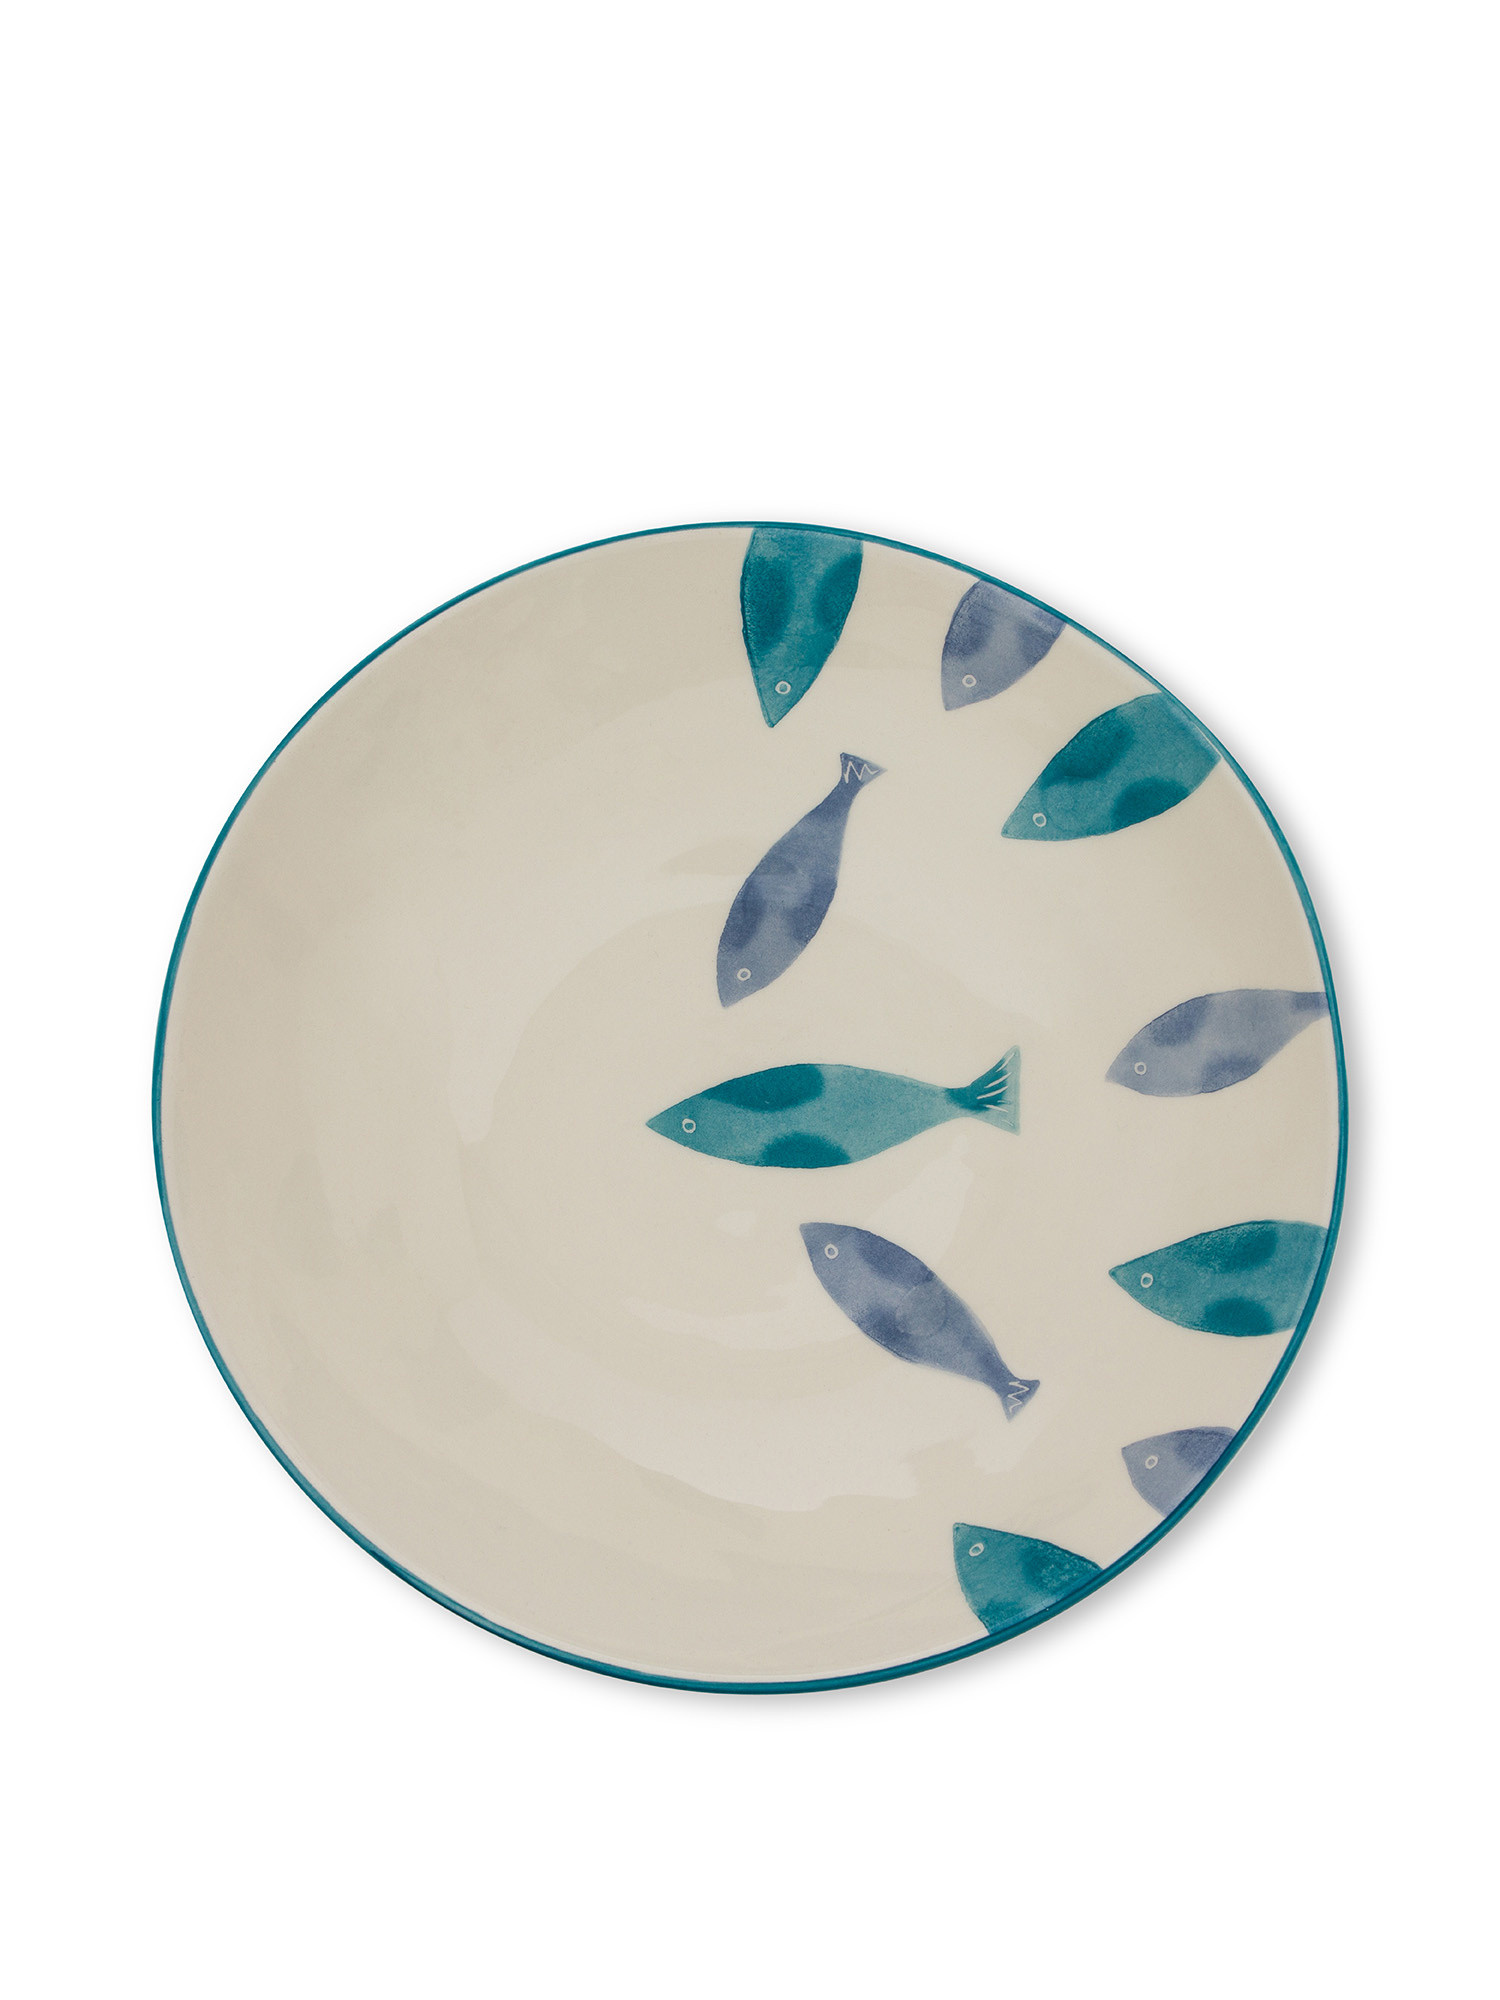 Insalatiera decorazione pesci, Bianco/Blu, large image number 1